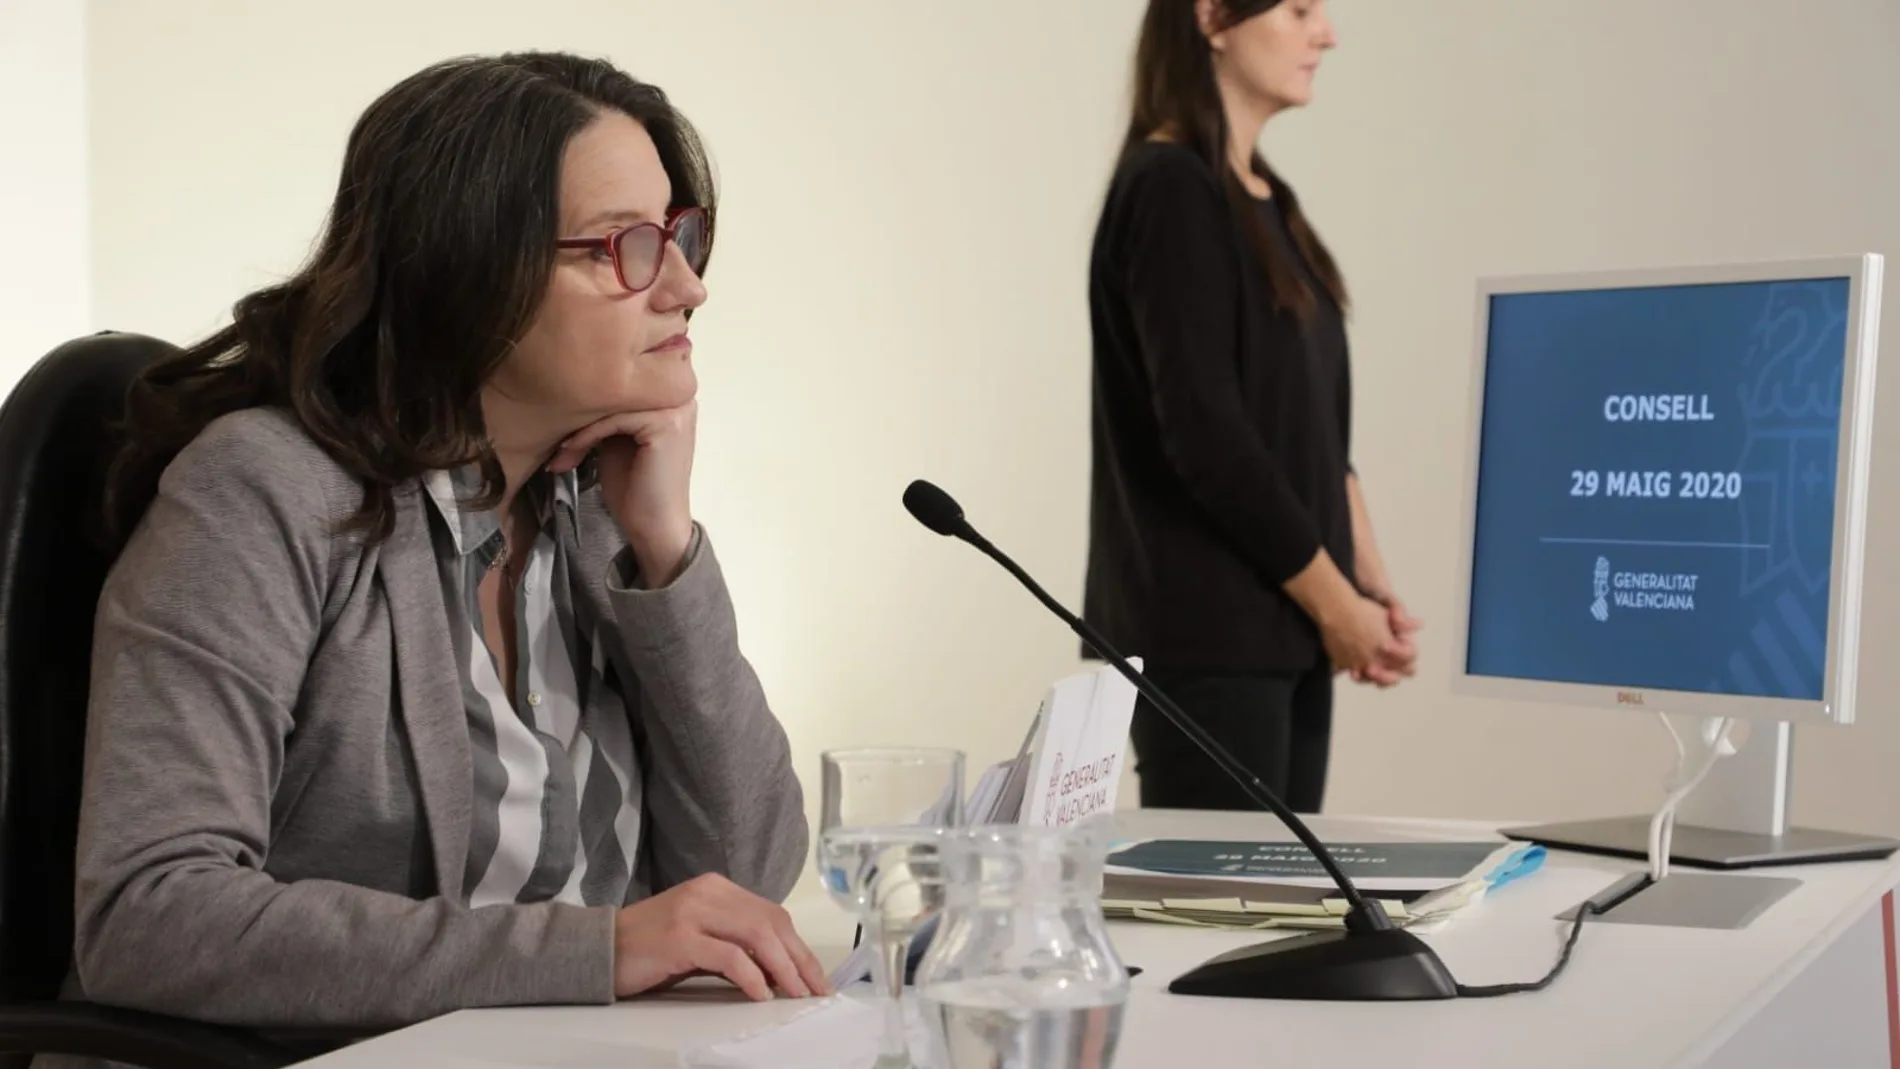 La vicepresidenta y portavoz del Consell, Mónica Oltra, informa sobre los asuntos tratados en el pleno del Gobierno valenciano